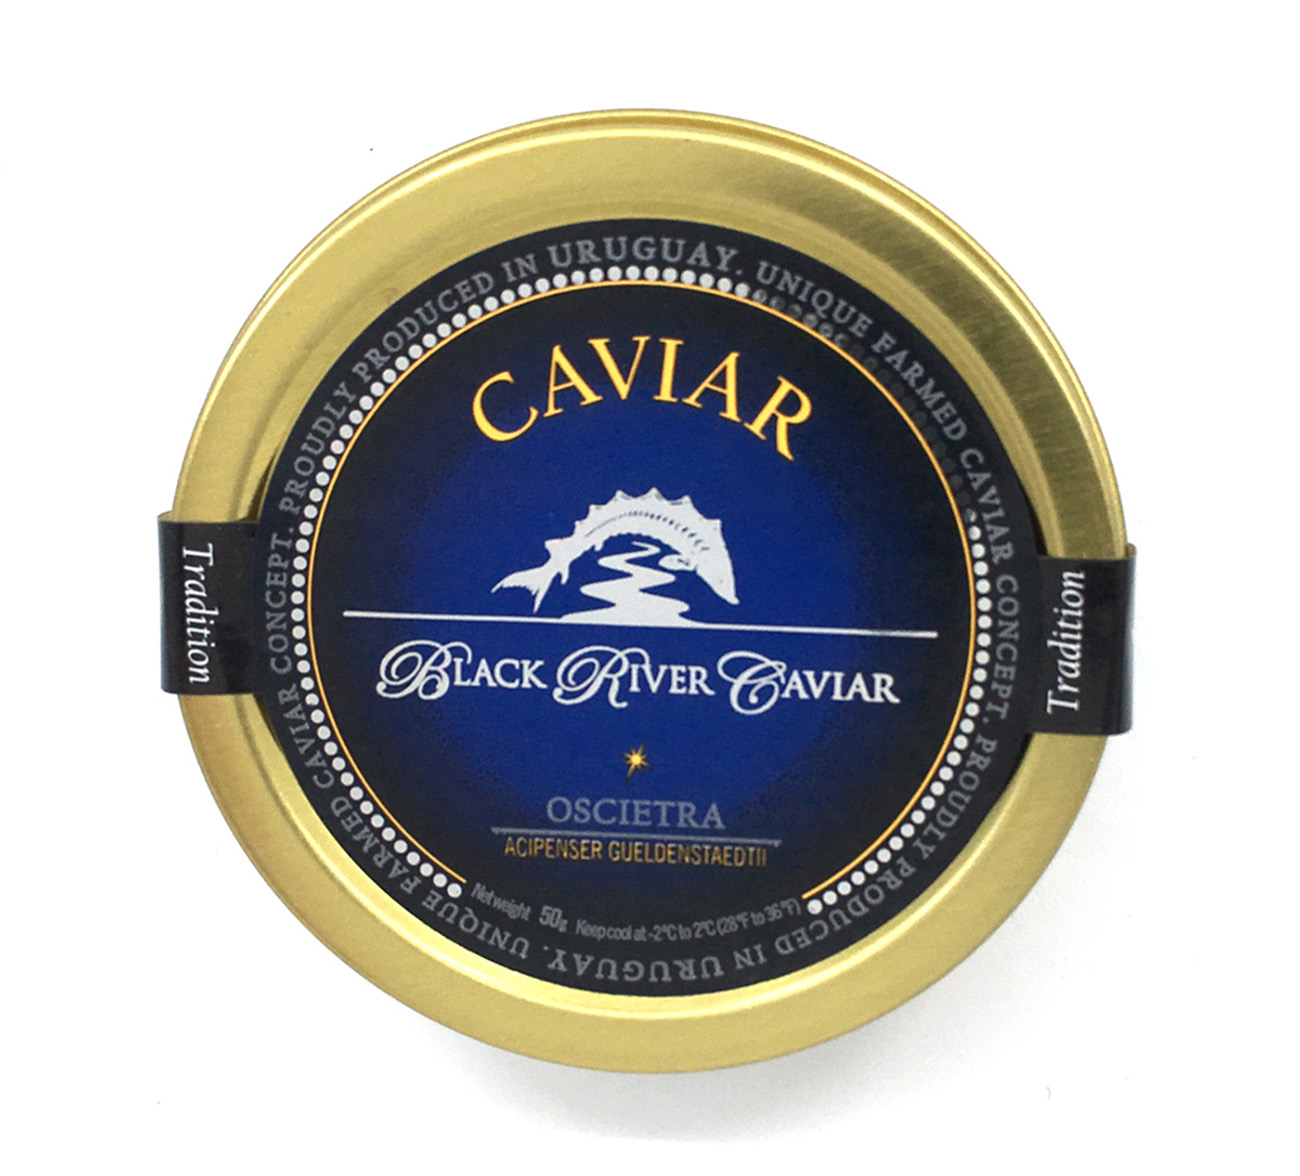 Tradition Oscietra Caviar - Black River Caviar